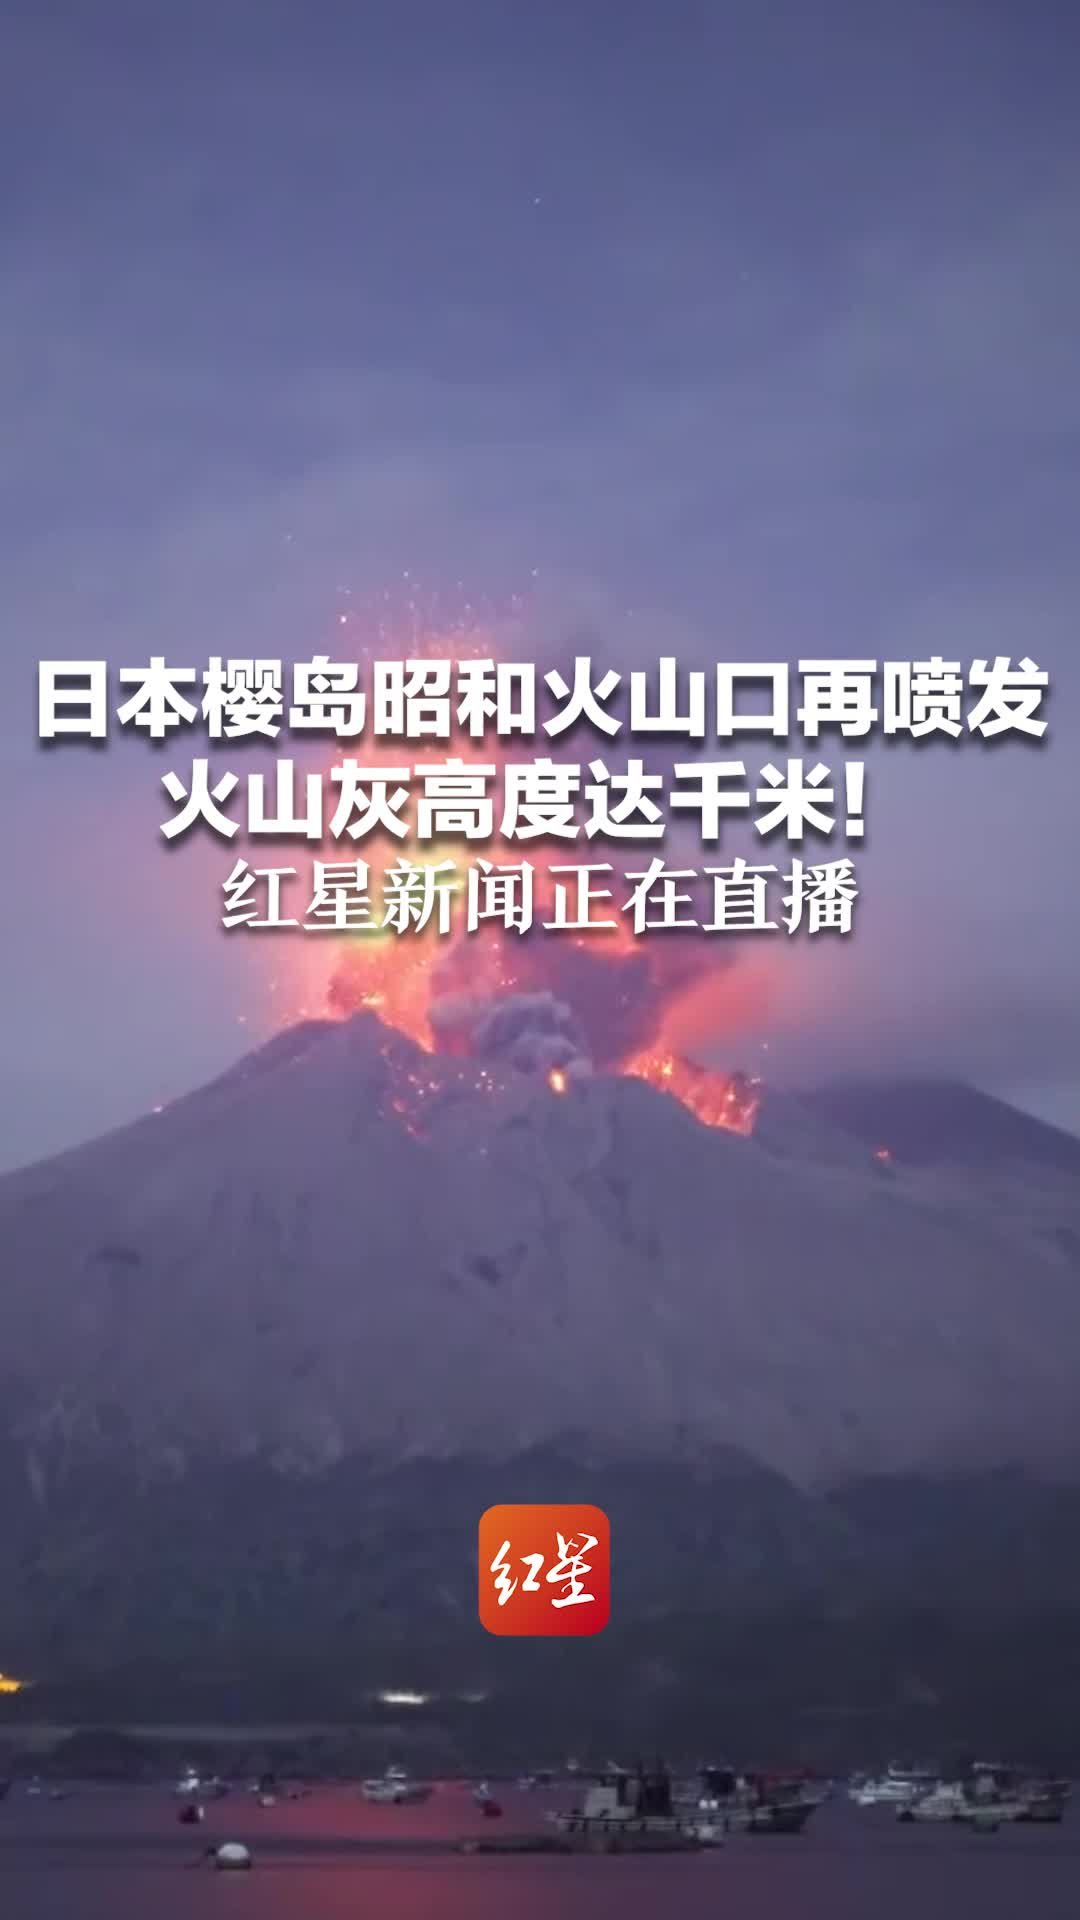 日本樱岛昭和火山口再喷发 火山灰高度达千米！红星新闻正在直播